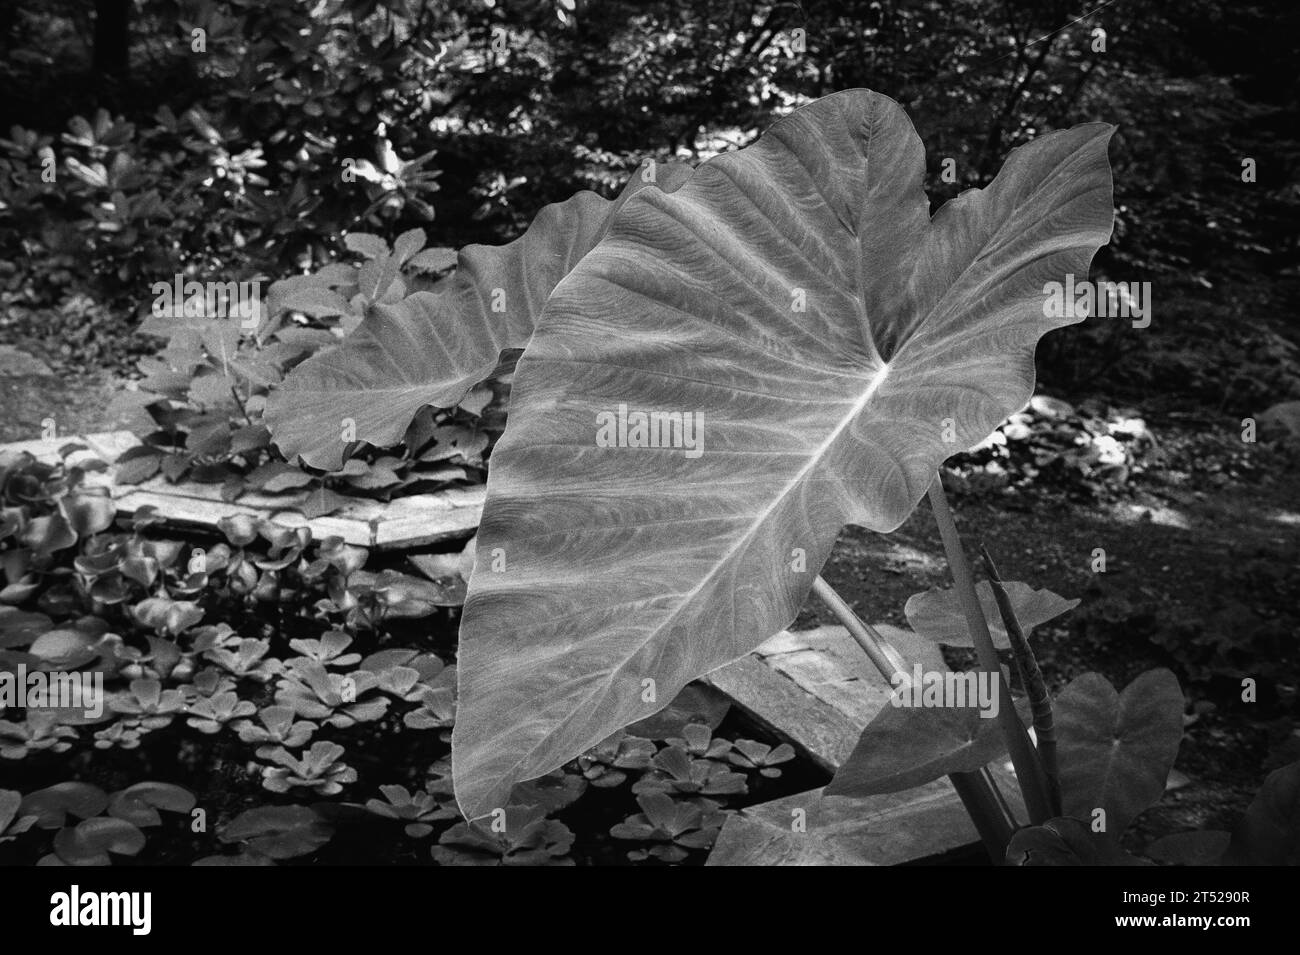 Eine Pflanze mit riesigen Blättern wächst aus einem kleinen Koi-Teich in einem üppigen Garten an einem sonnigen Tag. Das Bild wurde auf analogem Schwarzweißfilm aufgenommen. Stockfoto